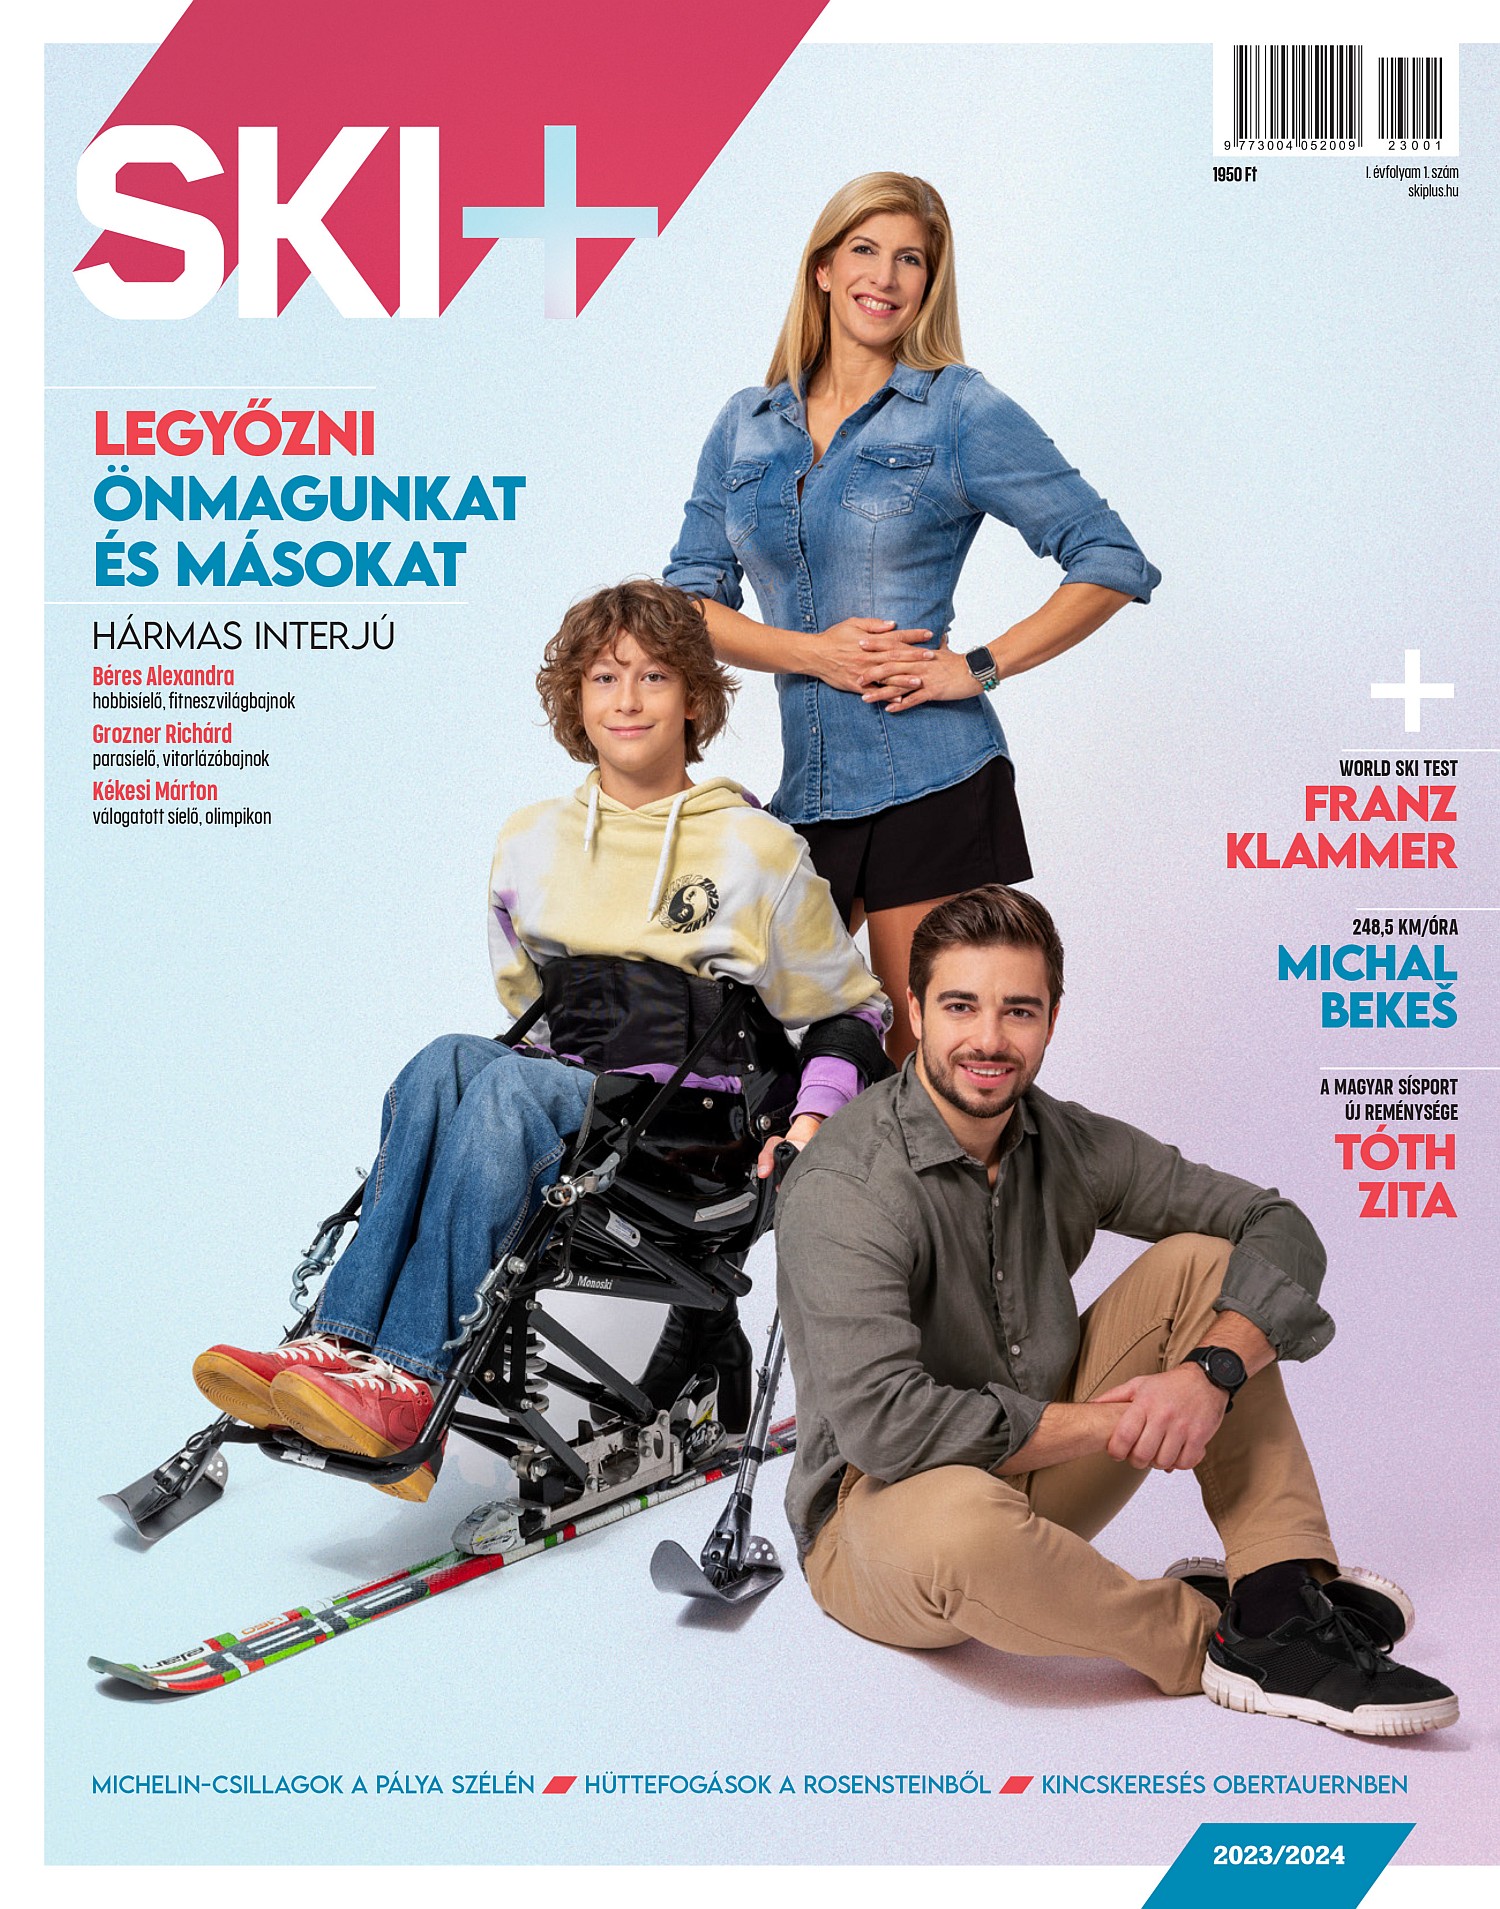 A Ski+ első lapszámának címlapján Béres Alexandra,  Grozner Richárd és Kékesi Máron